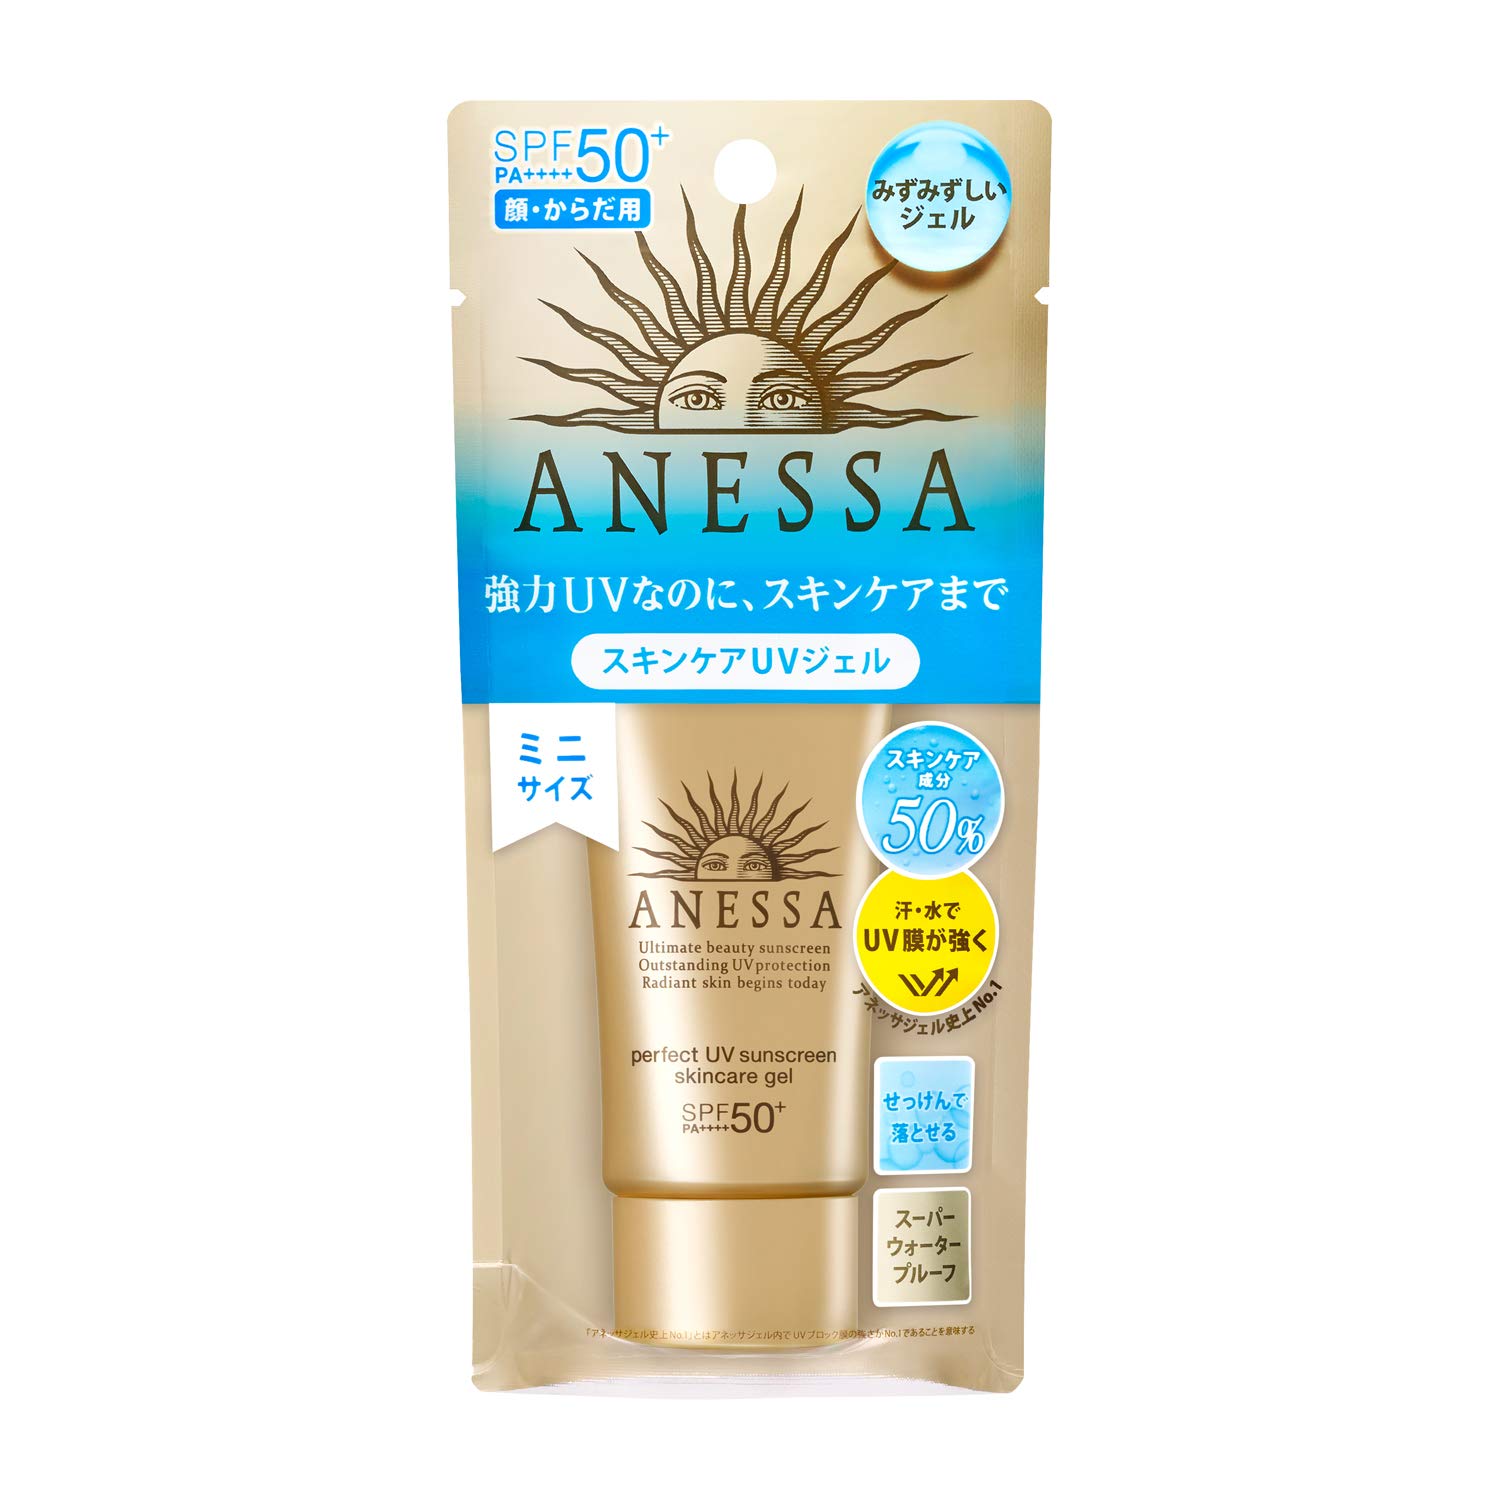 ANESSA (Anessa) Perfect UV skin care Gel a mini sunscreen citrus soap scent  32g